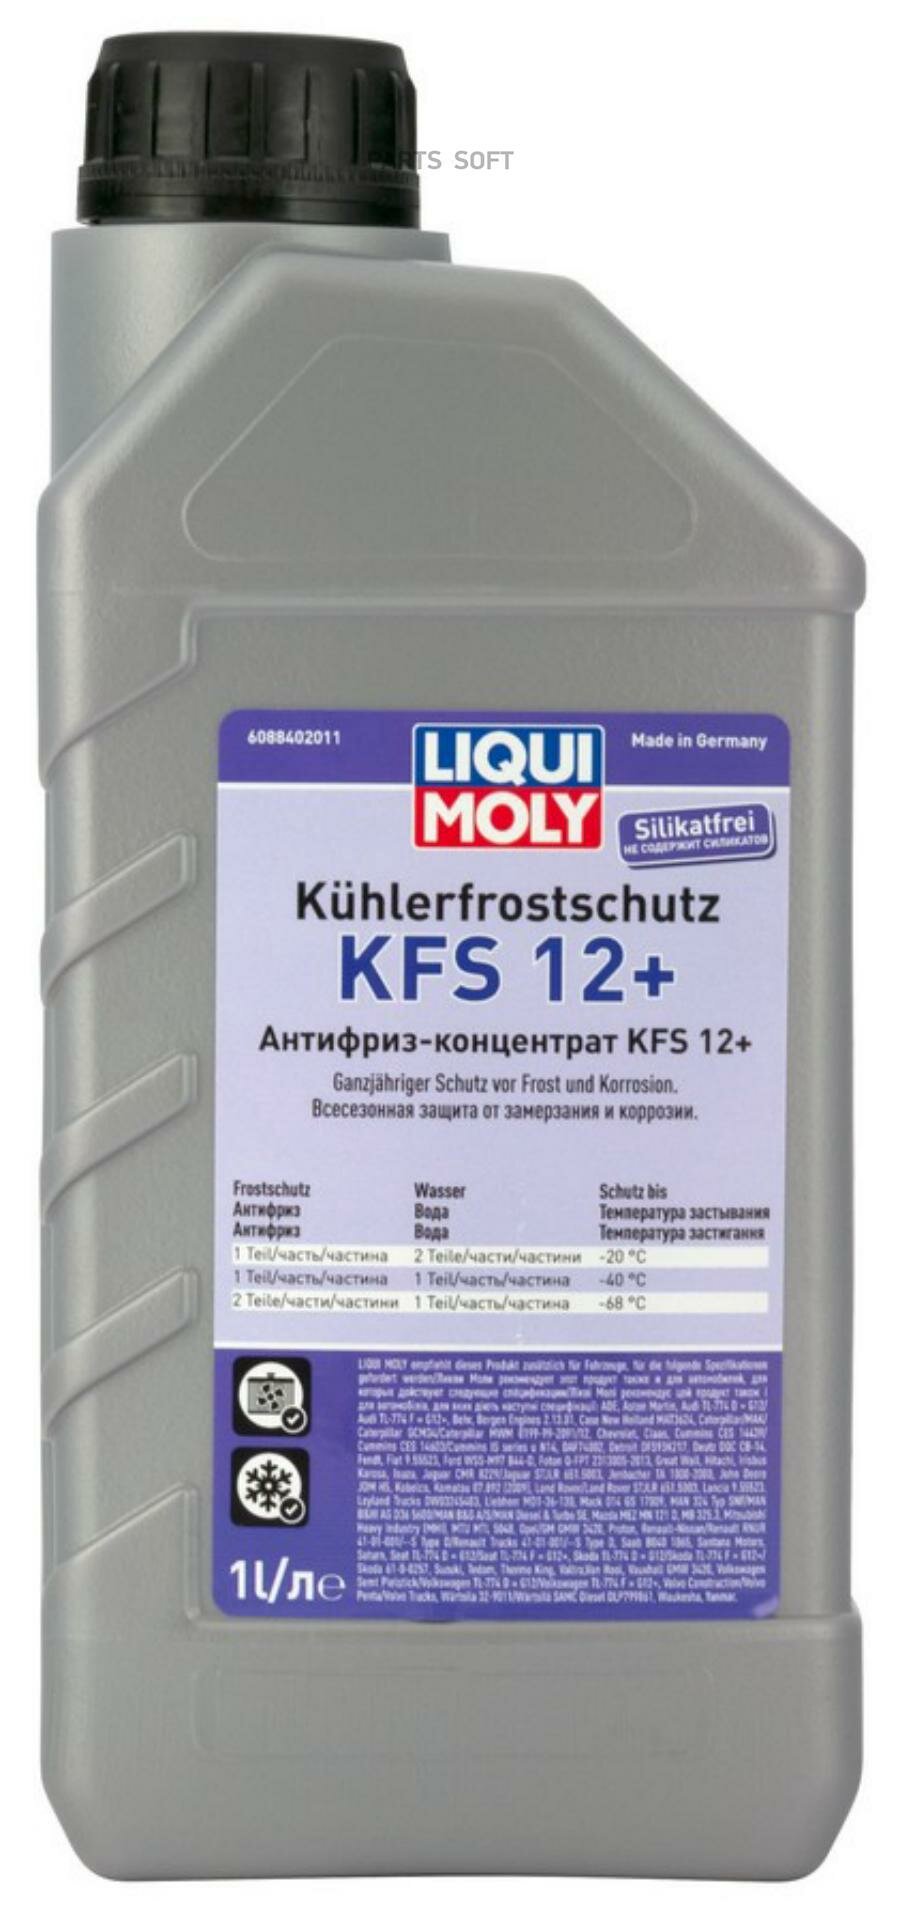 LIQUI MOLY 8840 LiquiMoly Kuhlerfrostschutz KFS 2001 Plus G12 1L_антифриз! красн.конц. 1:1 -40°C смеш-ся с G11/G12